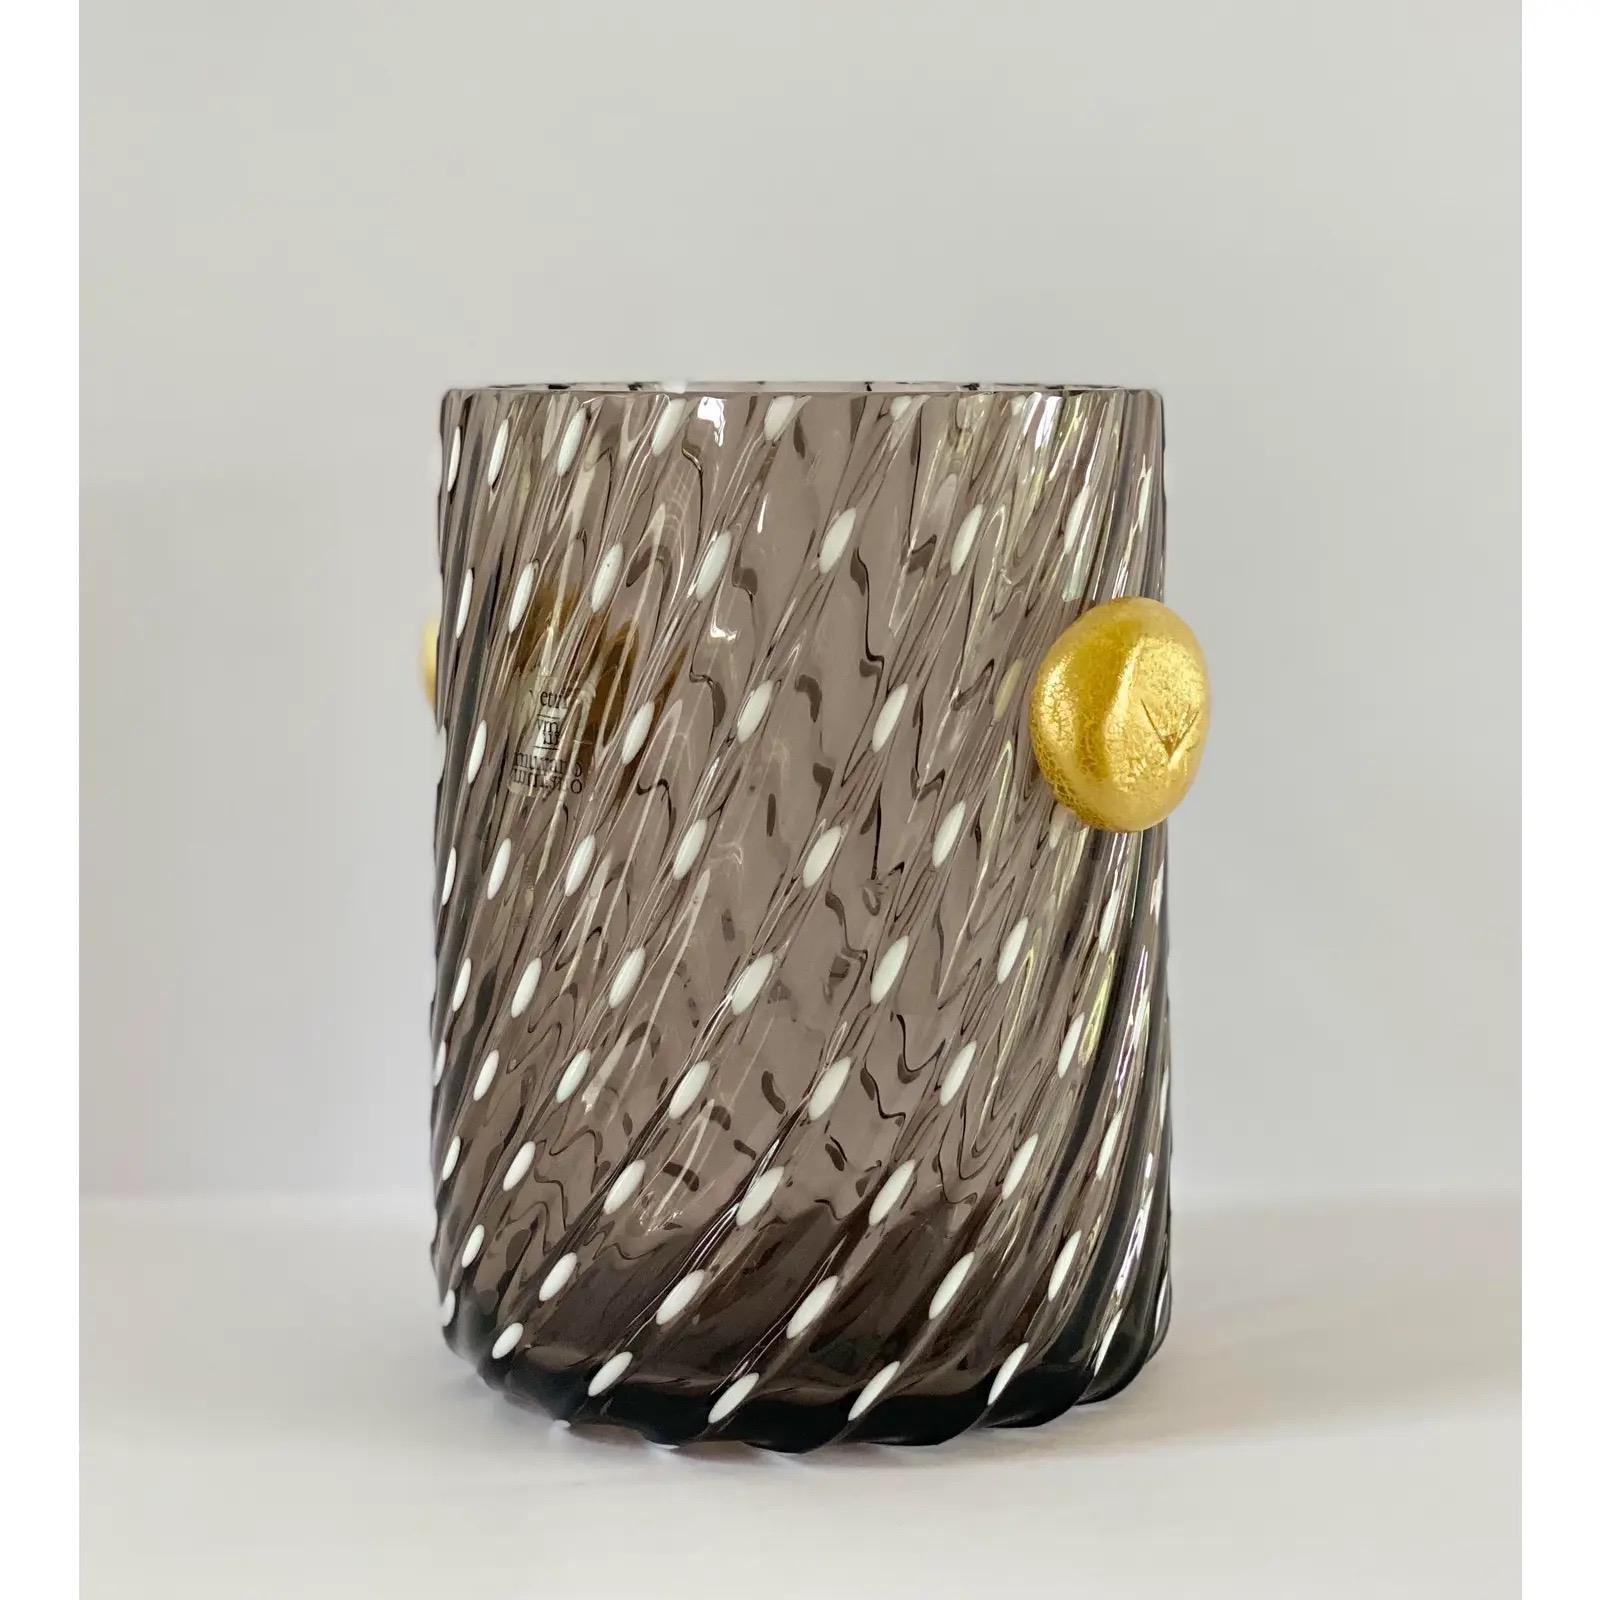 European 1970s Italian Vetri DI Murano Hand Blown Art Glass Vase For Sale